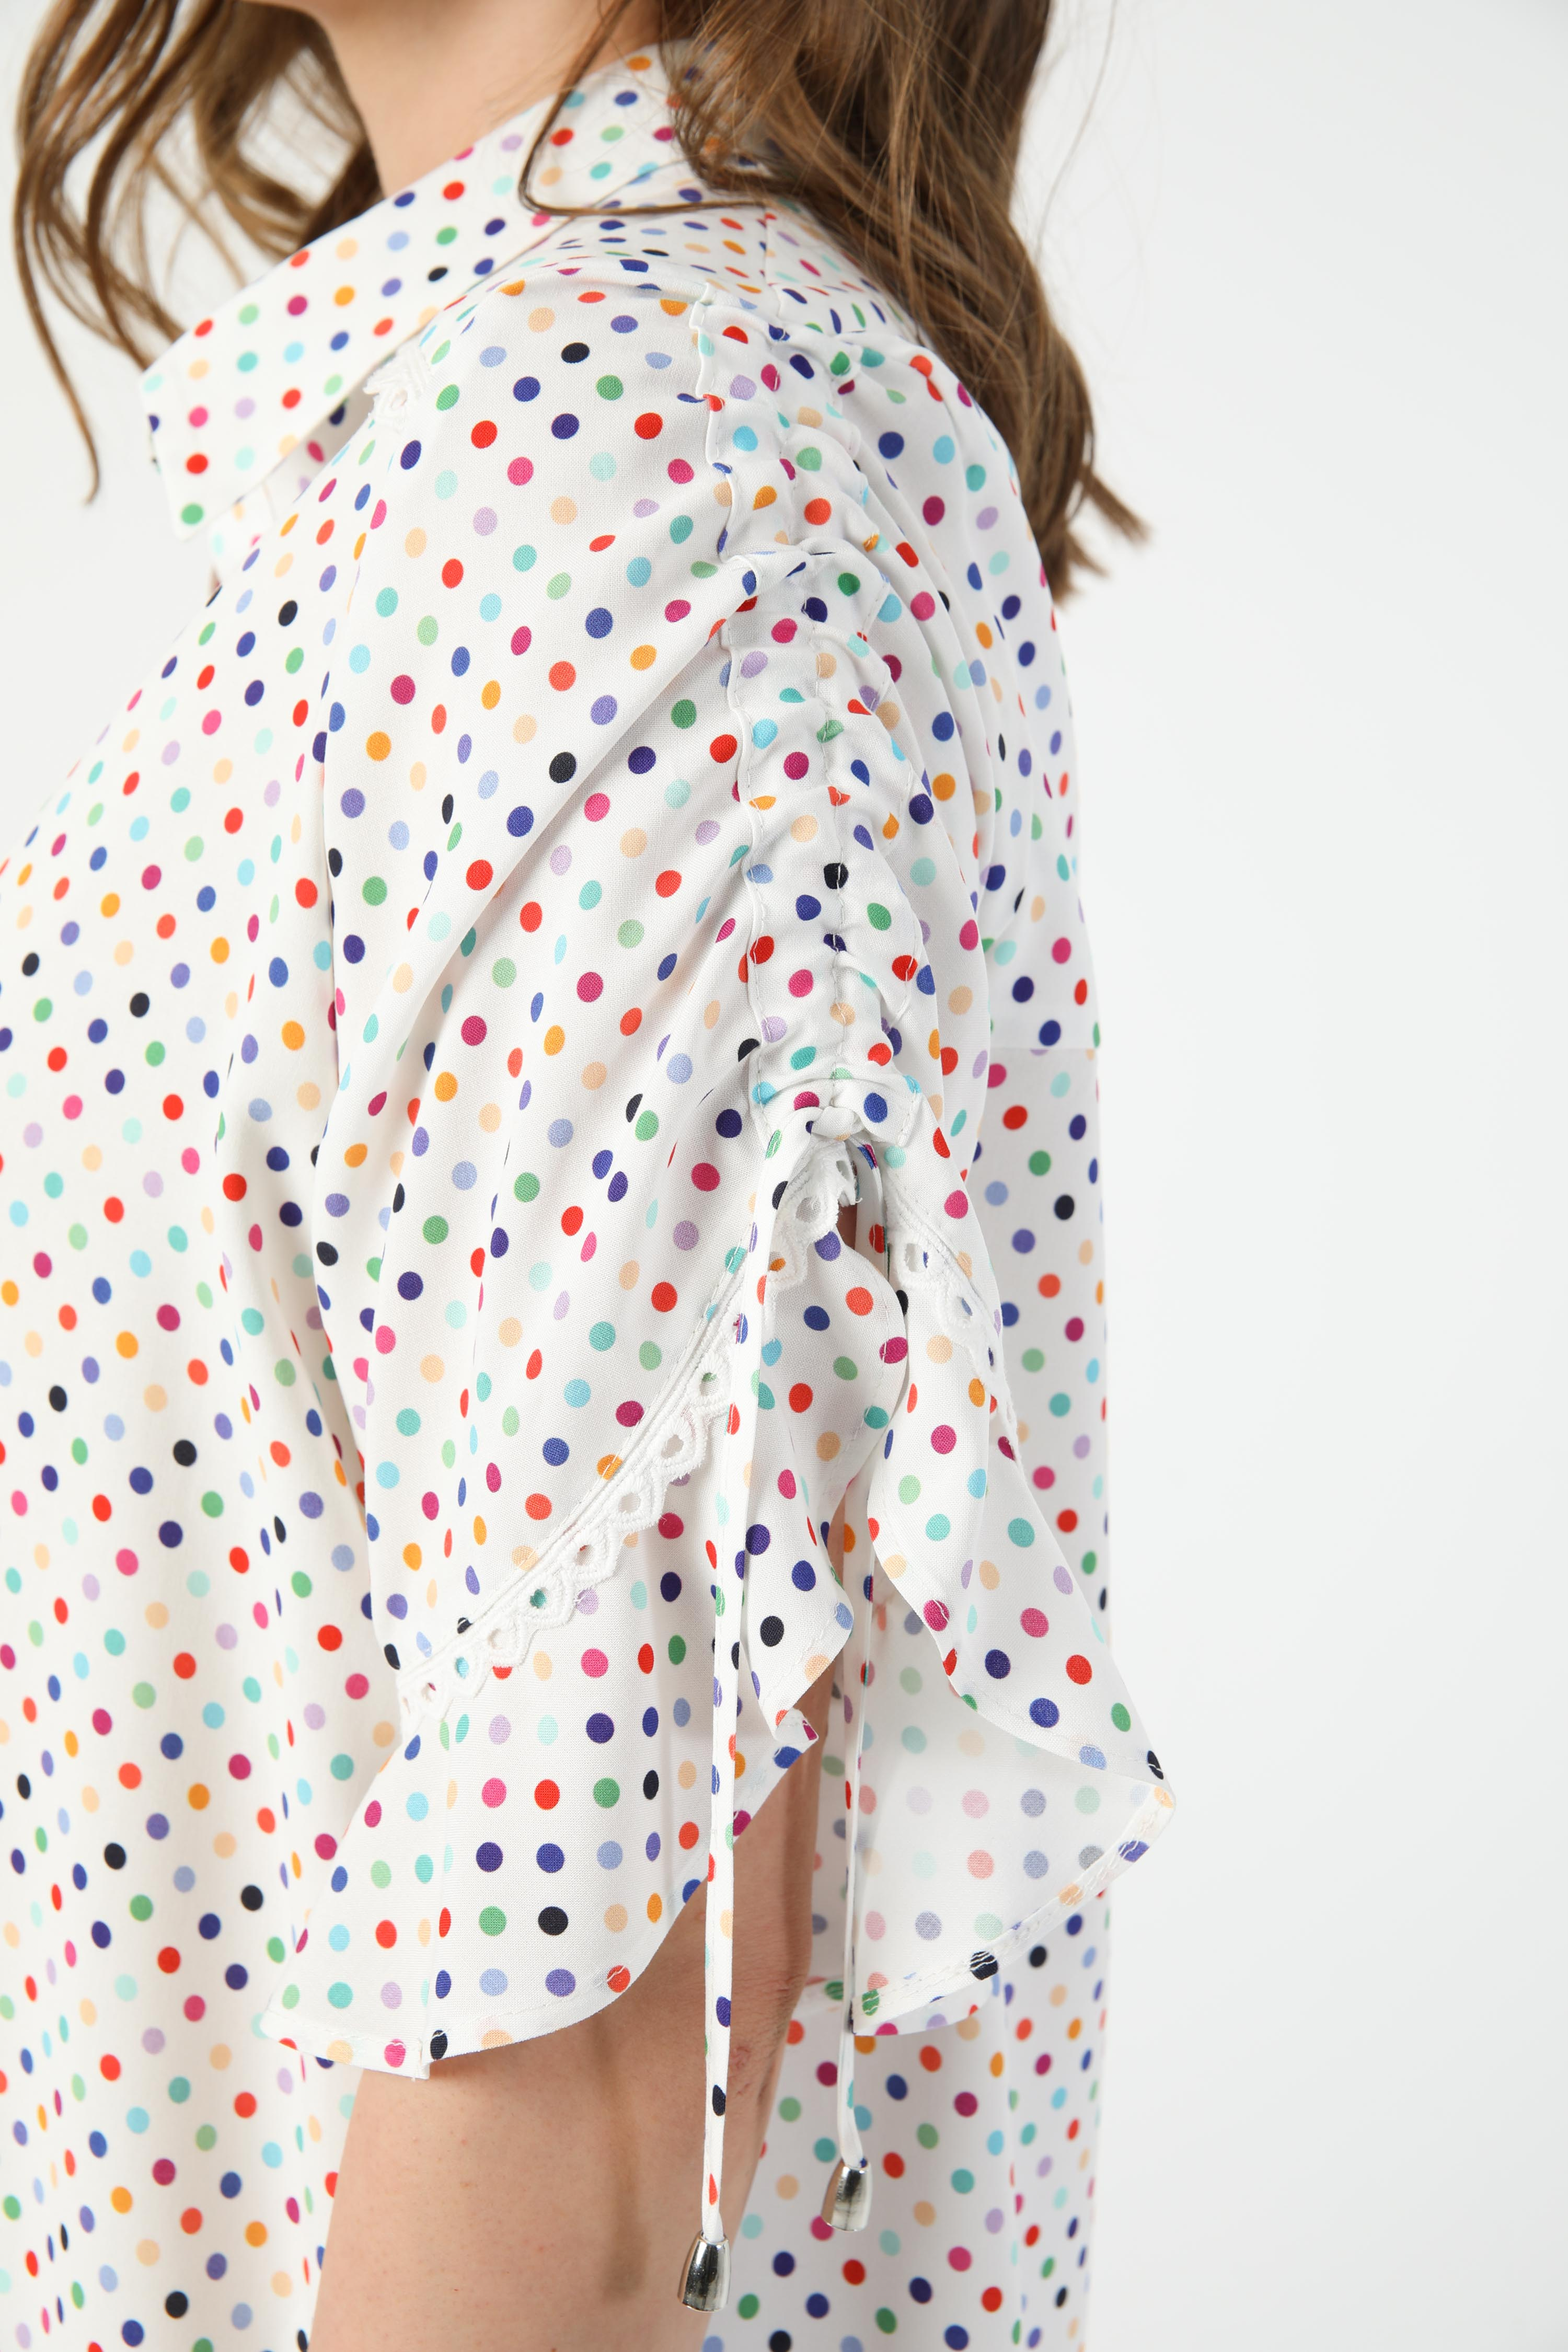 Multicolored polka dot shirt (shipping 15/20 May)